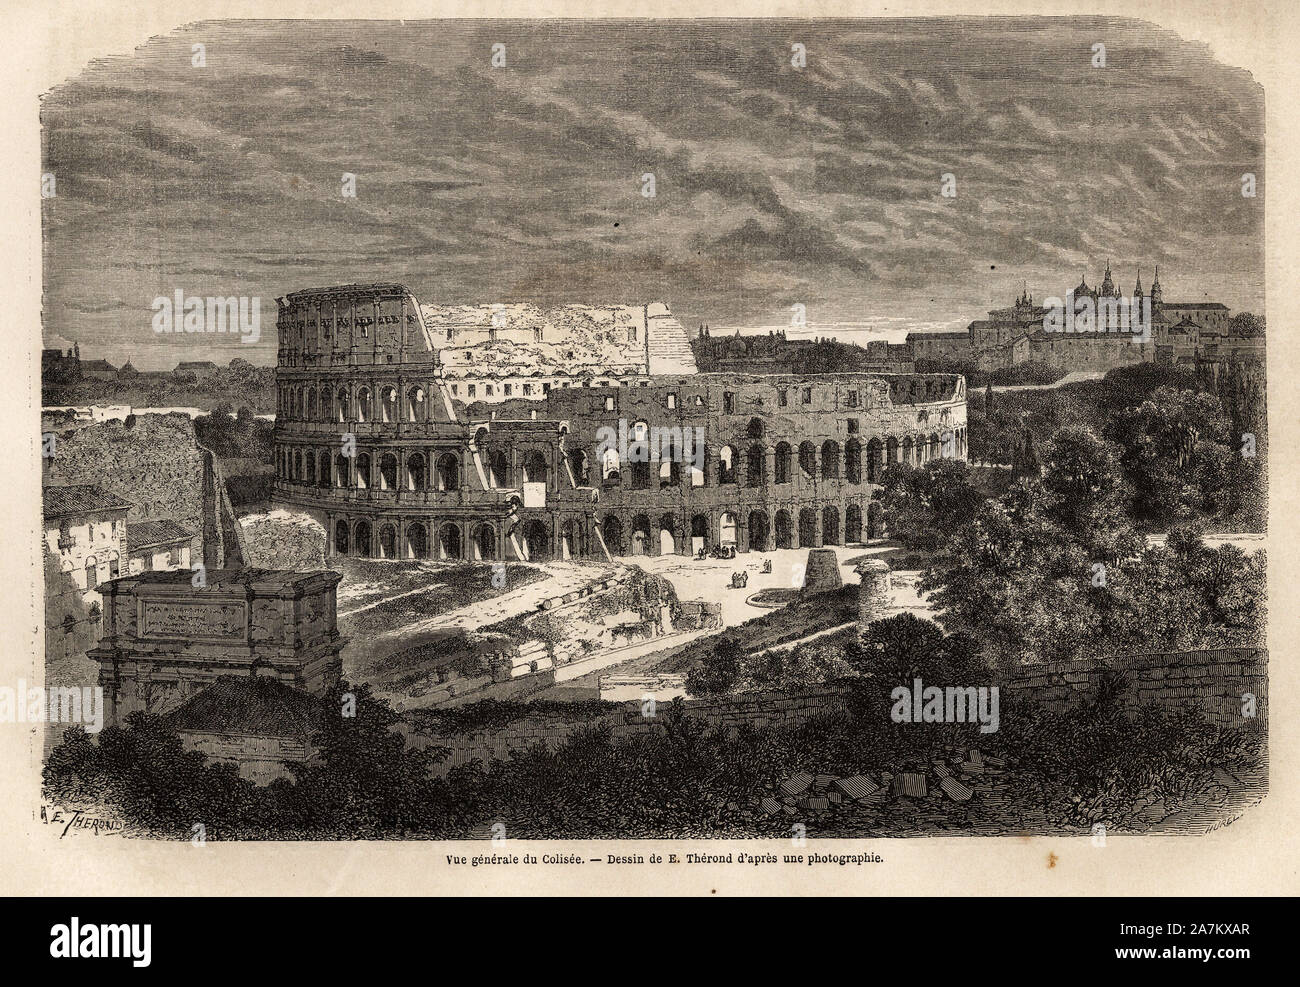 Vue generale du Colisee, a Rome, amphitheatre flavien acheve en 80, sous le regne de l'empereur Titus, pouvant accueillir jusqu'a 75 000 personnes, il Stock Photo